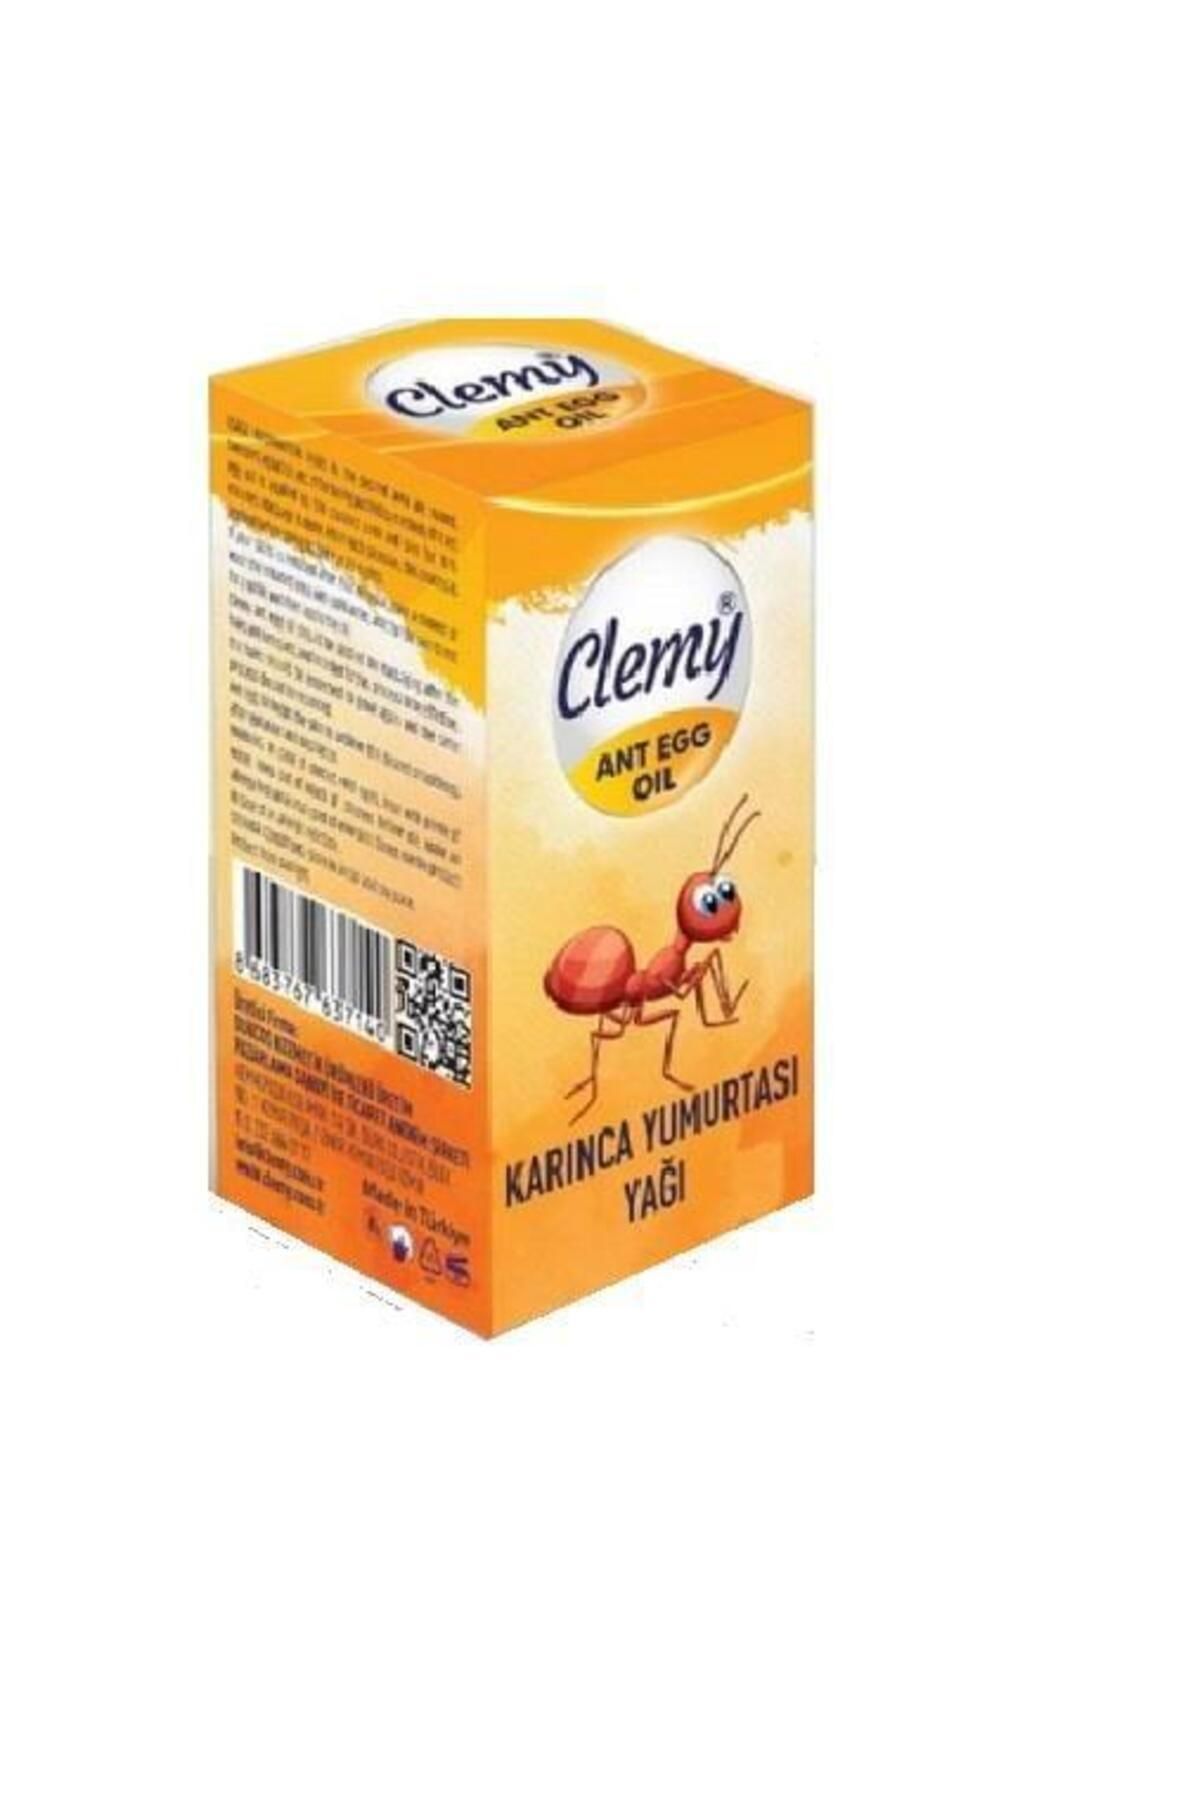 Clemly Clemy Karınca Yumurtası Yağı 20 ml